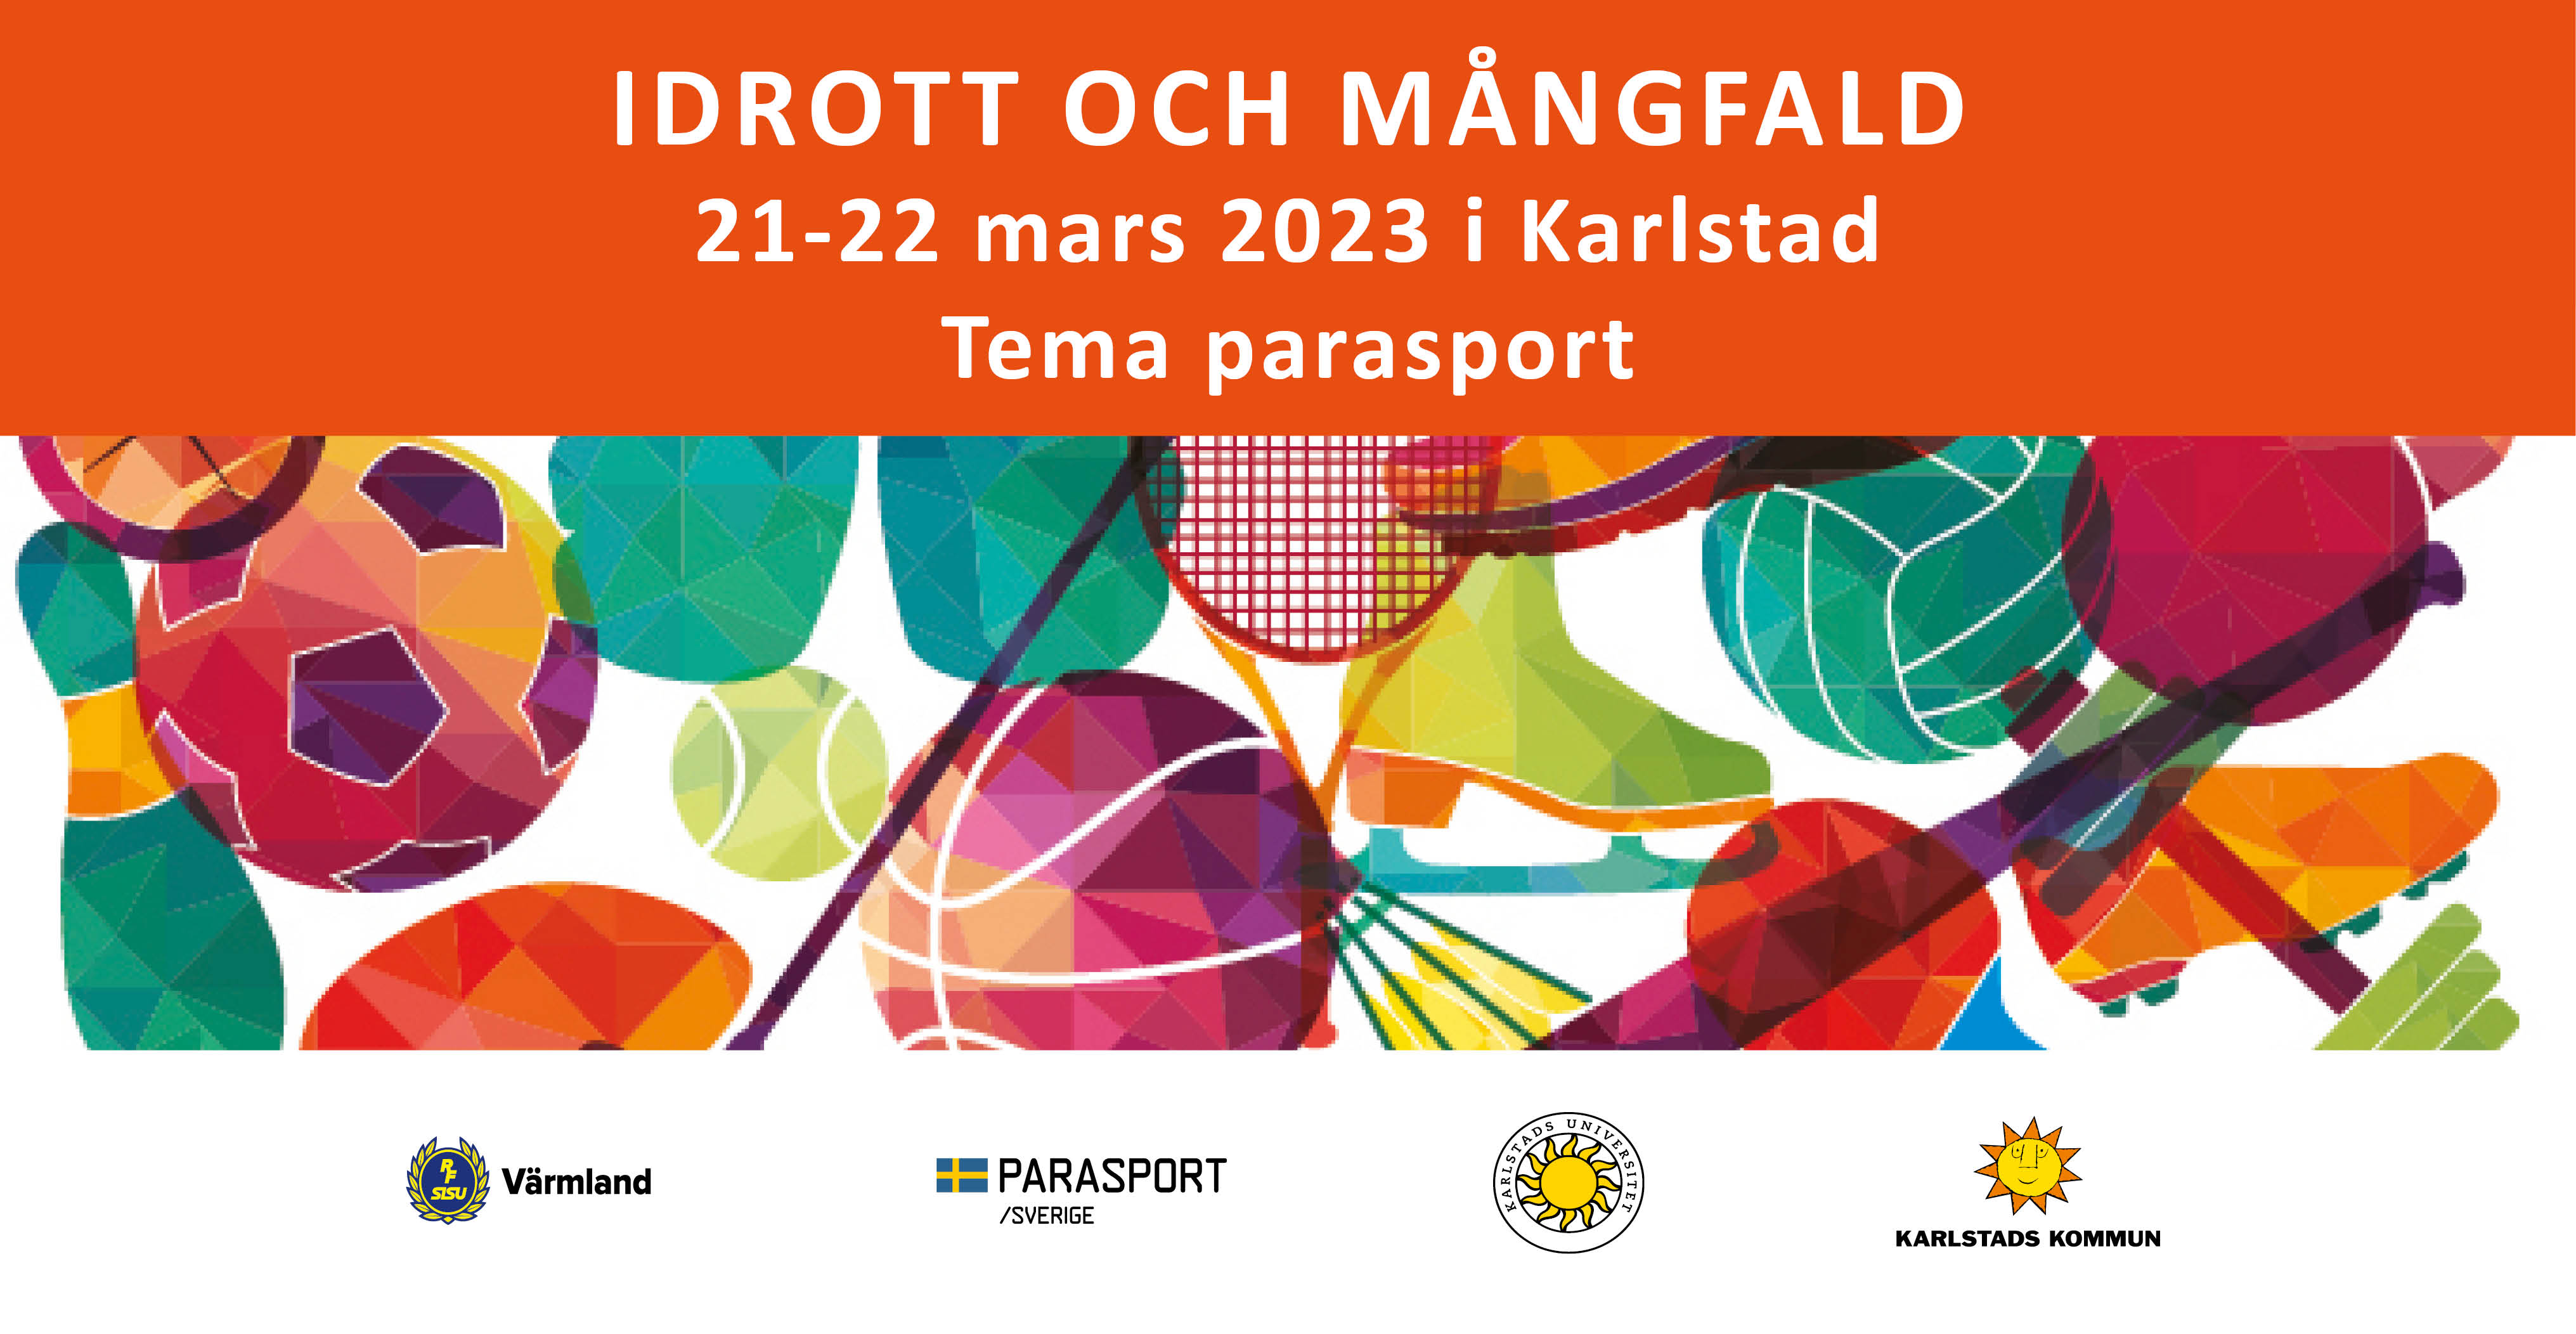 Idrott och mångfald 2023, 21-22 mars, i Karlstad.